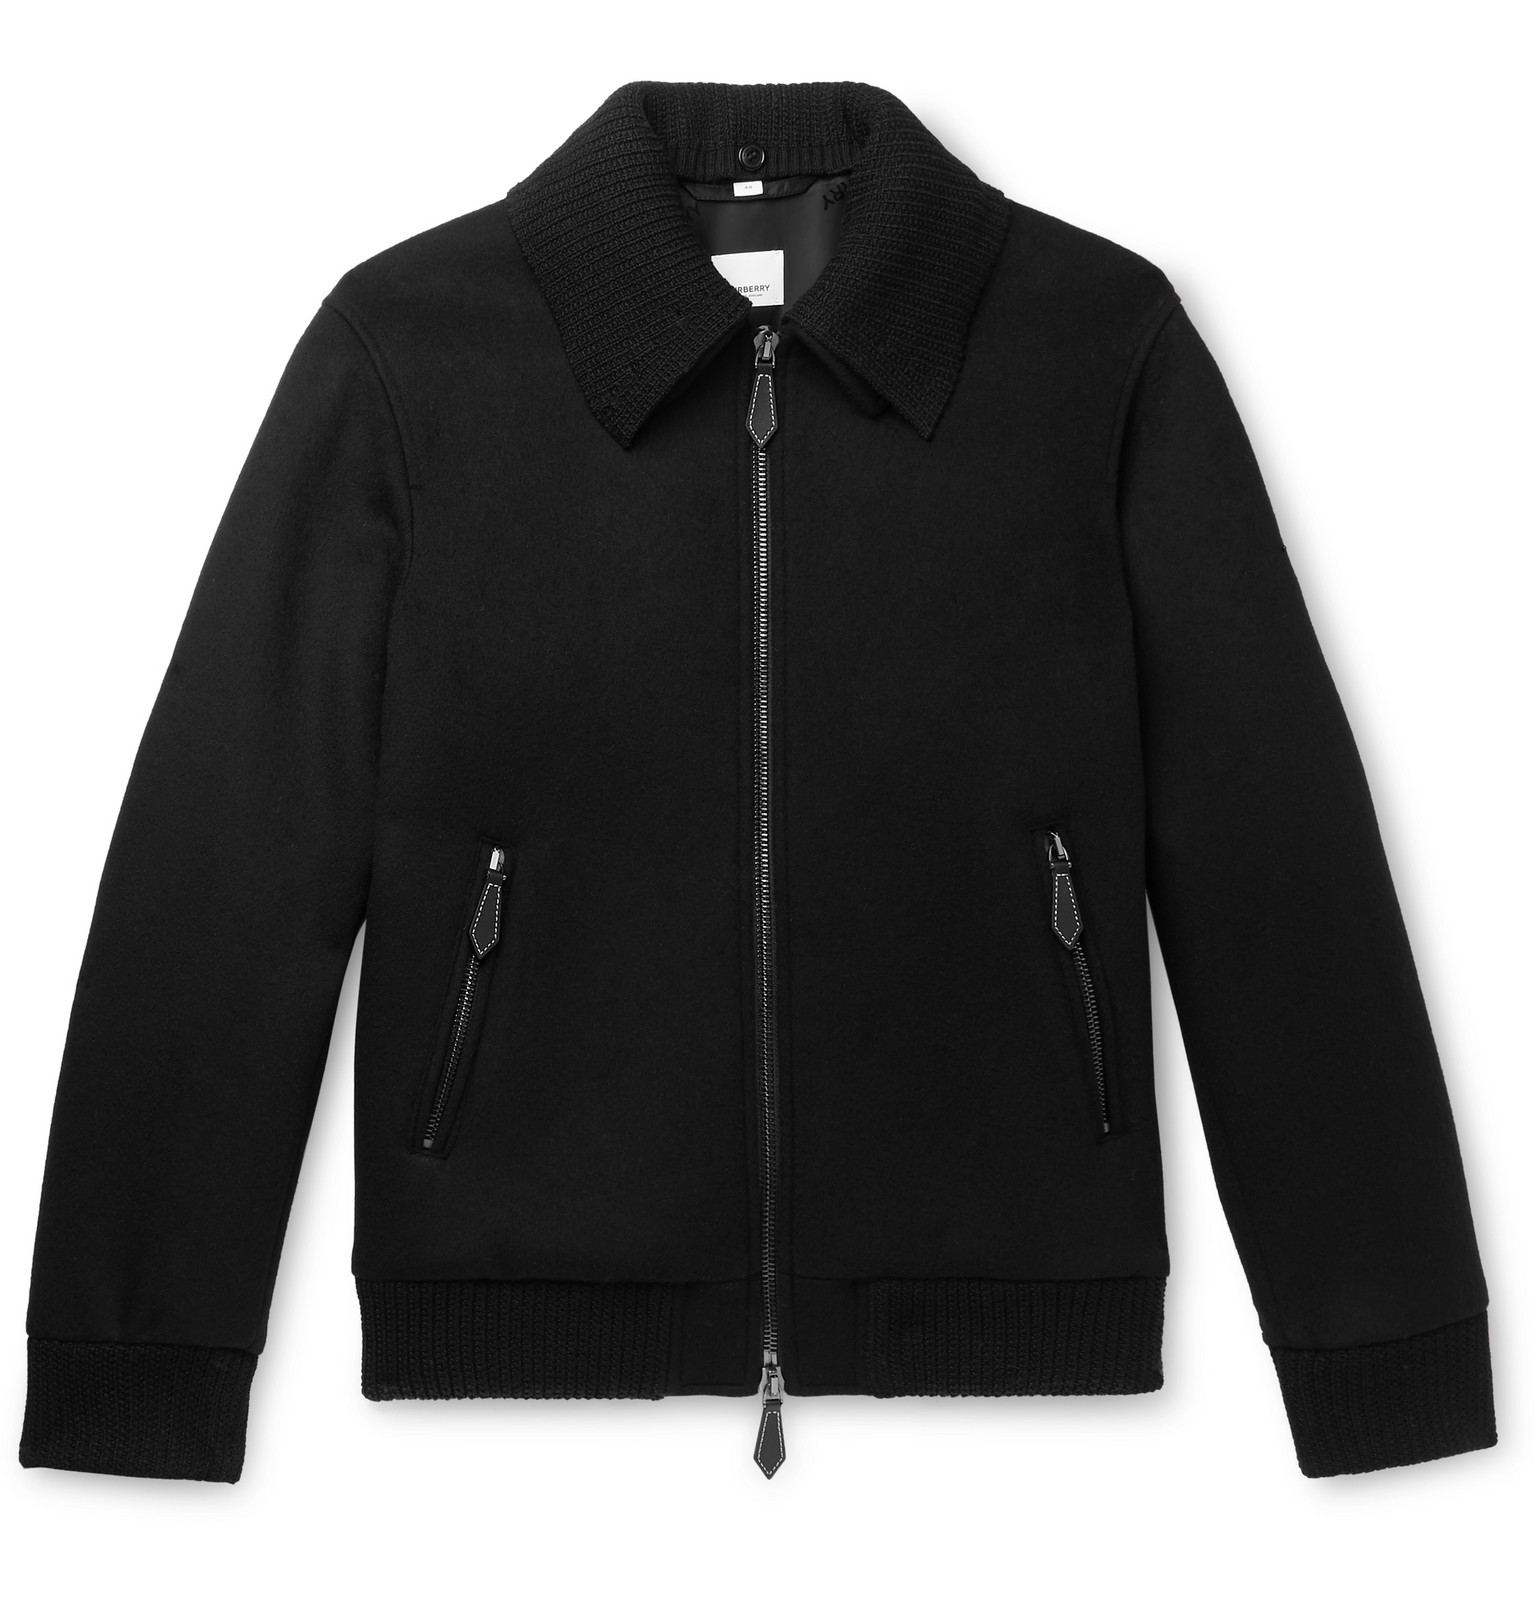 burberry black jacket